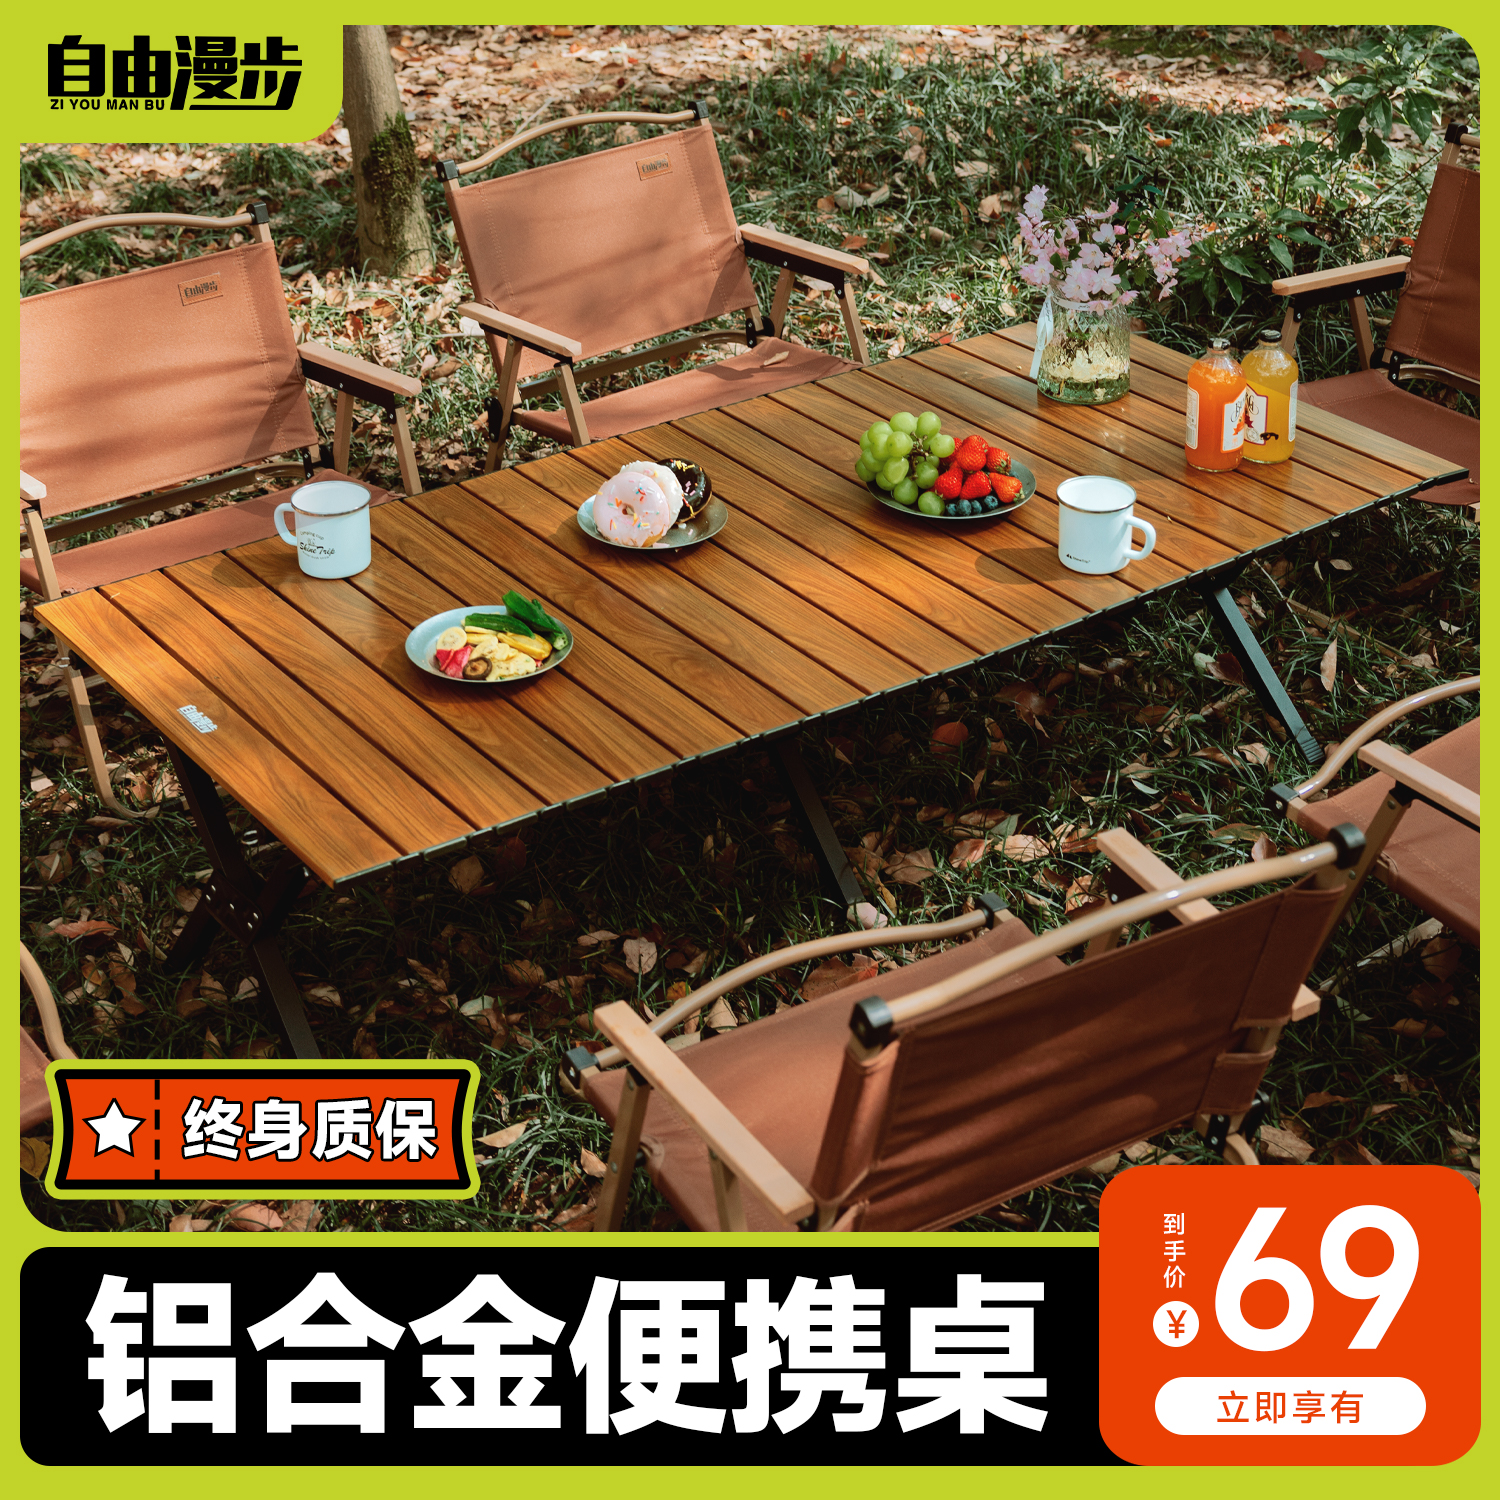 户外铝合金蛋卷桌折叠便携式野餐桌椅露营桌子野炊装备全套有用品